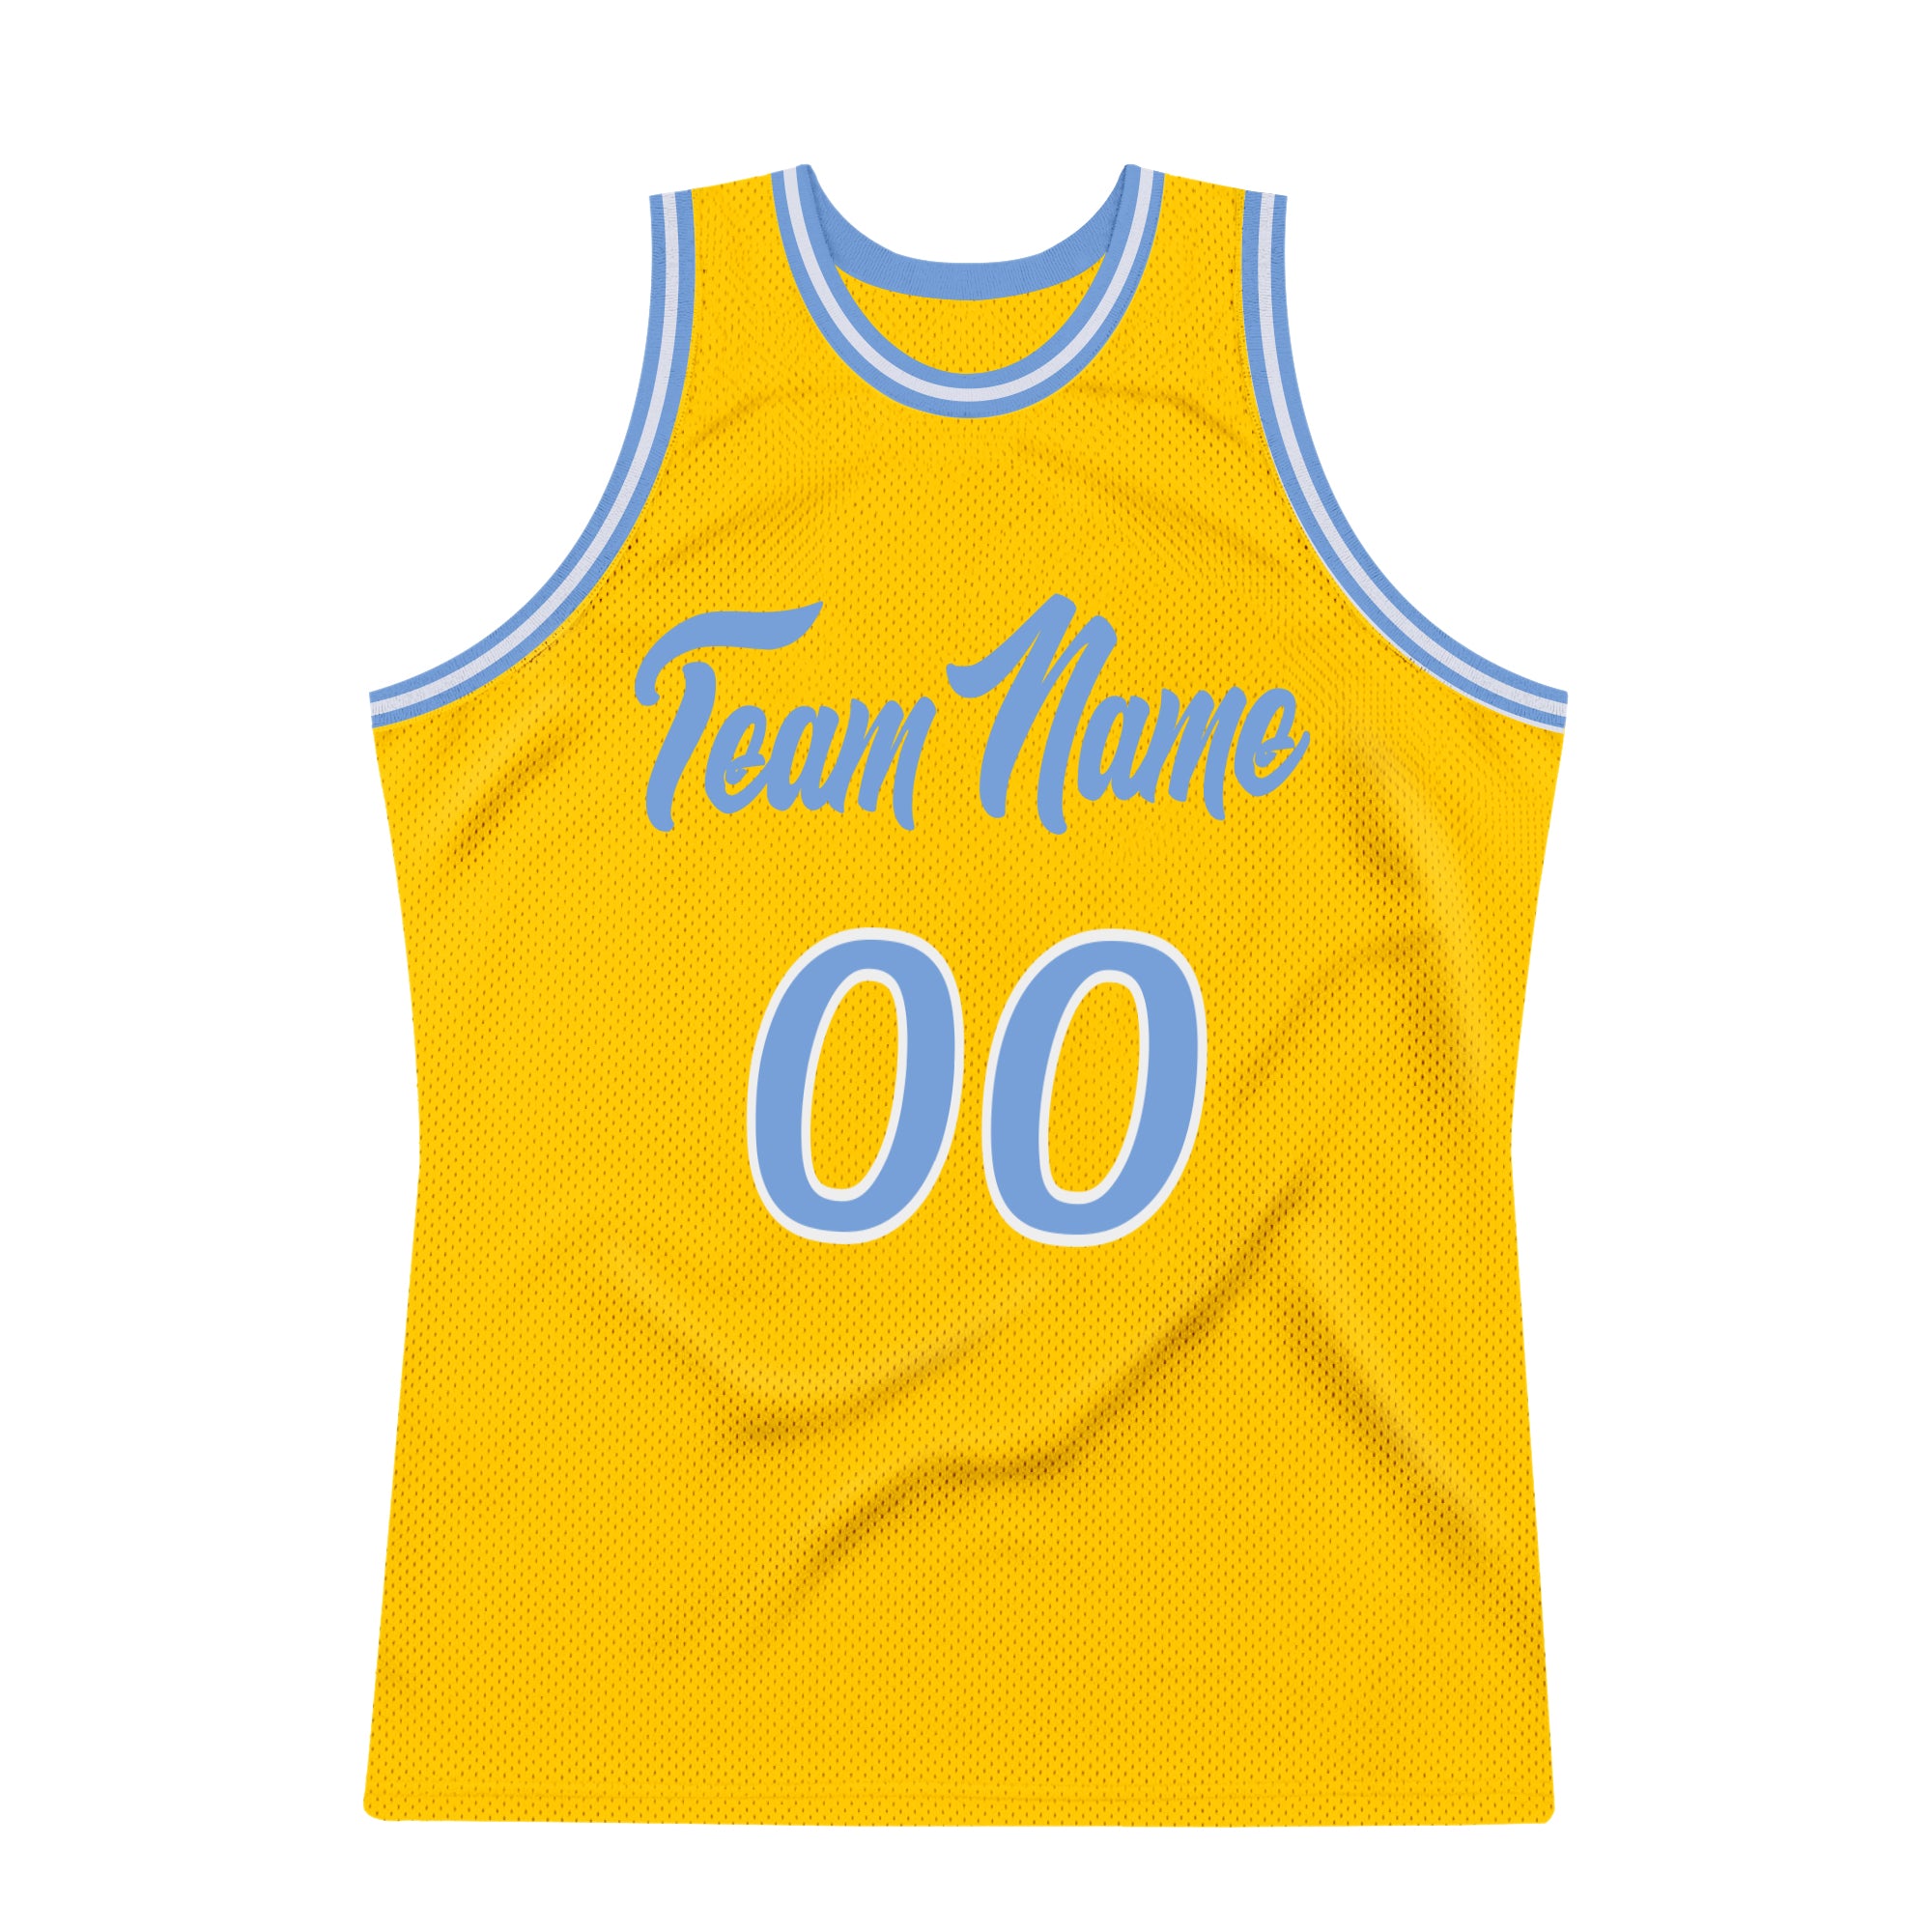 HOT] Buy New Custom UCLA Bruins Jersey Basketball White